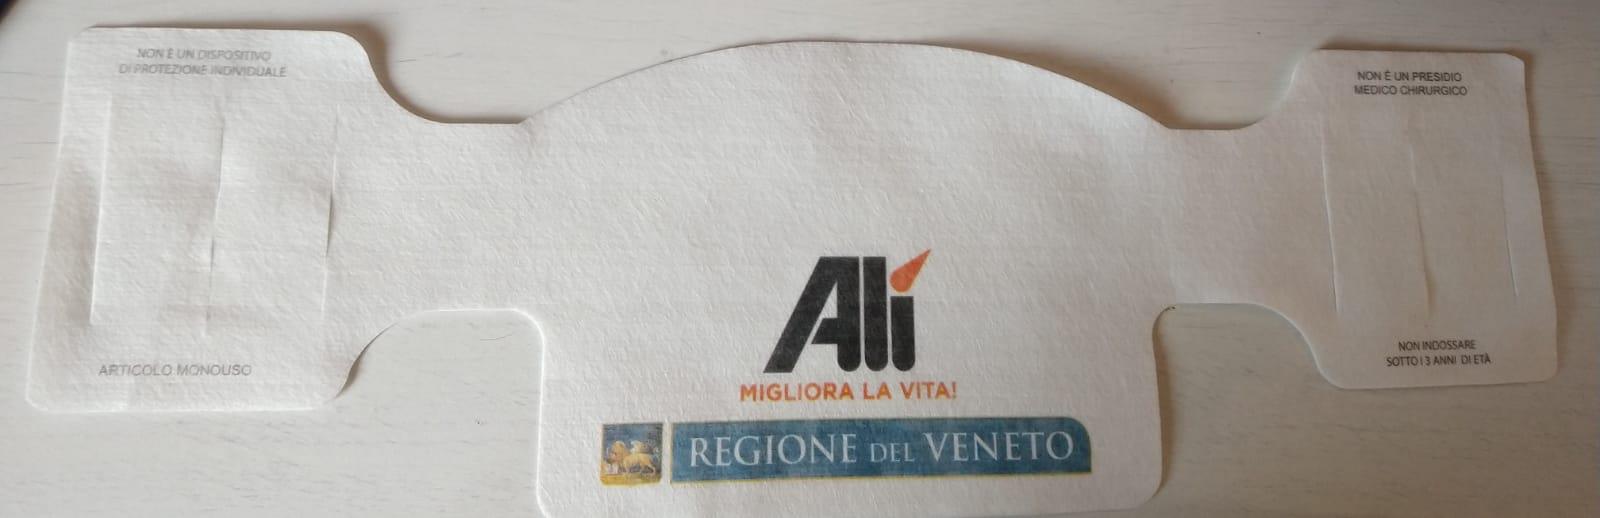 Coronavirus, il Veneto distribuisce mascherine con la pubblicità: il caso finisce in Parlamento